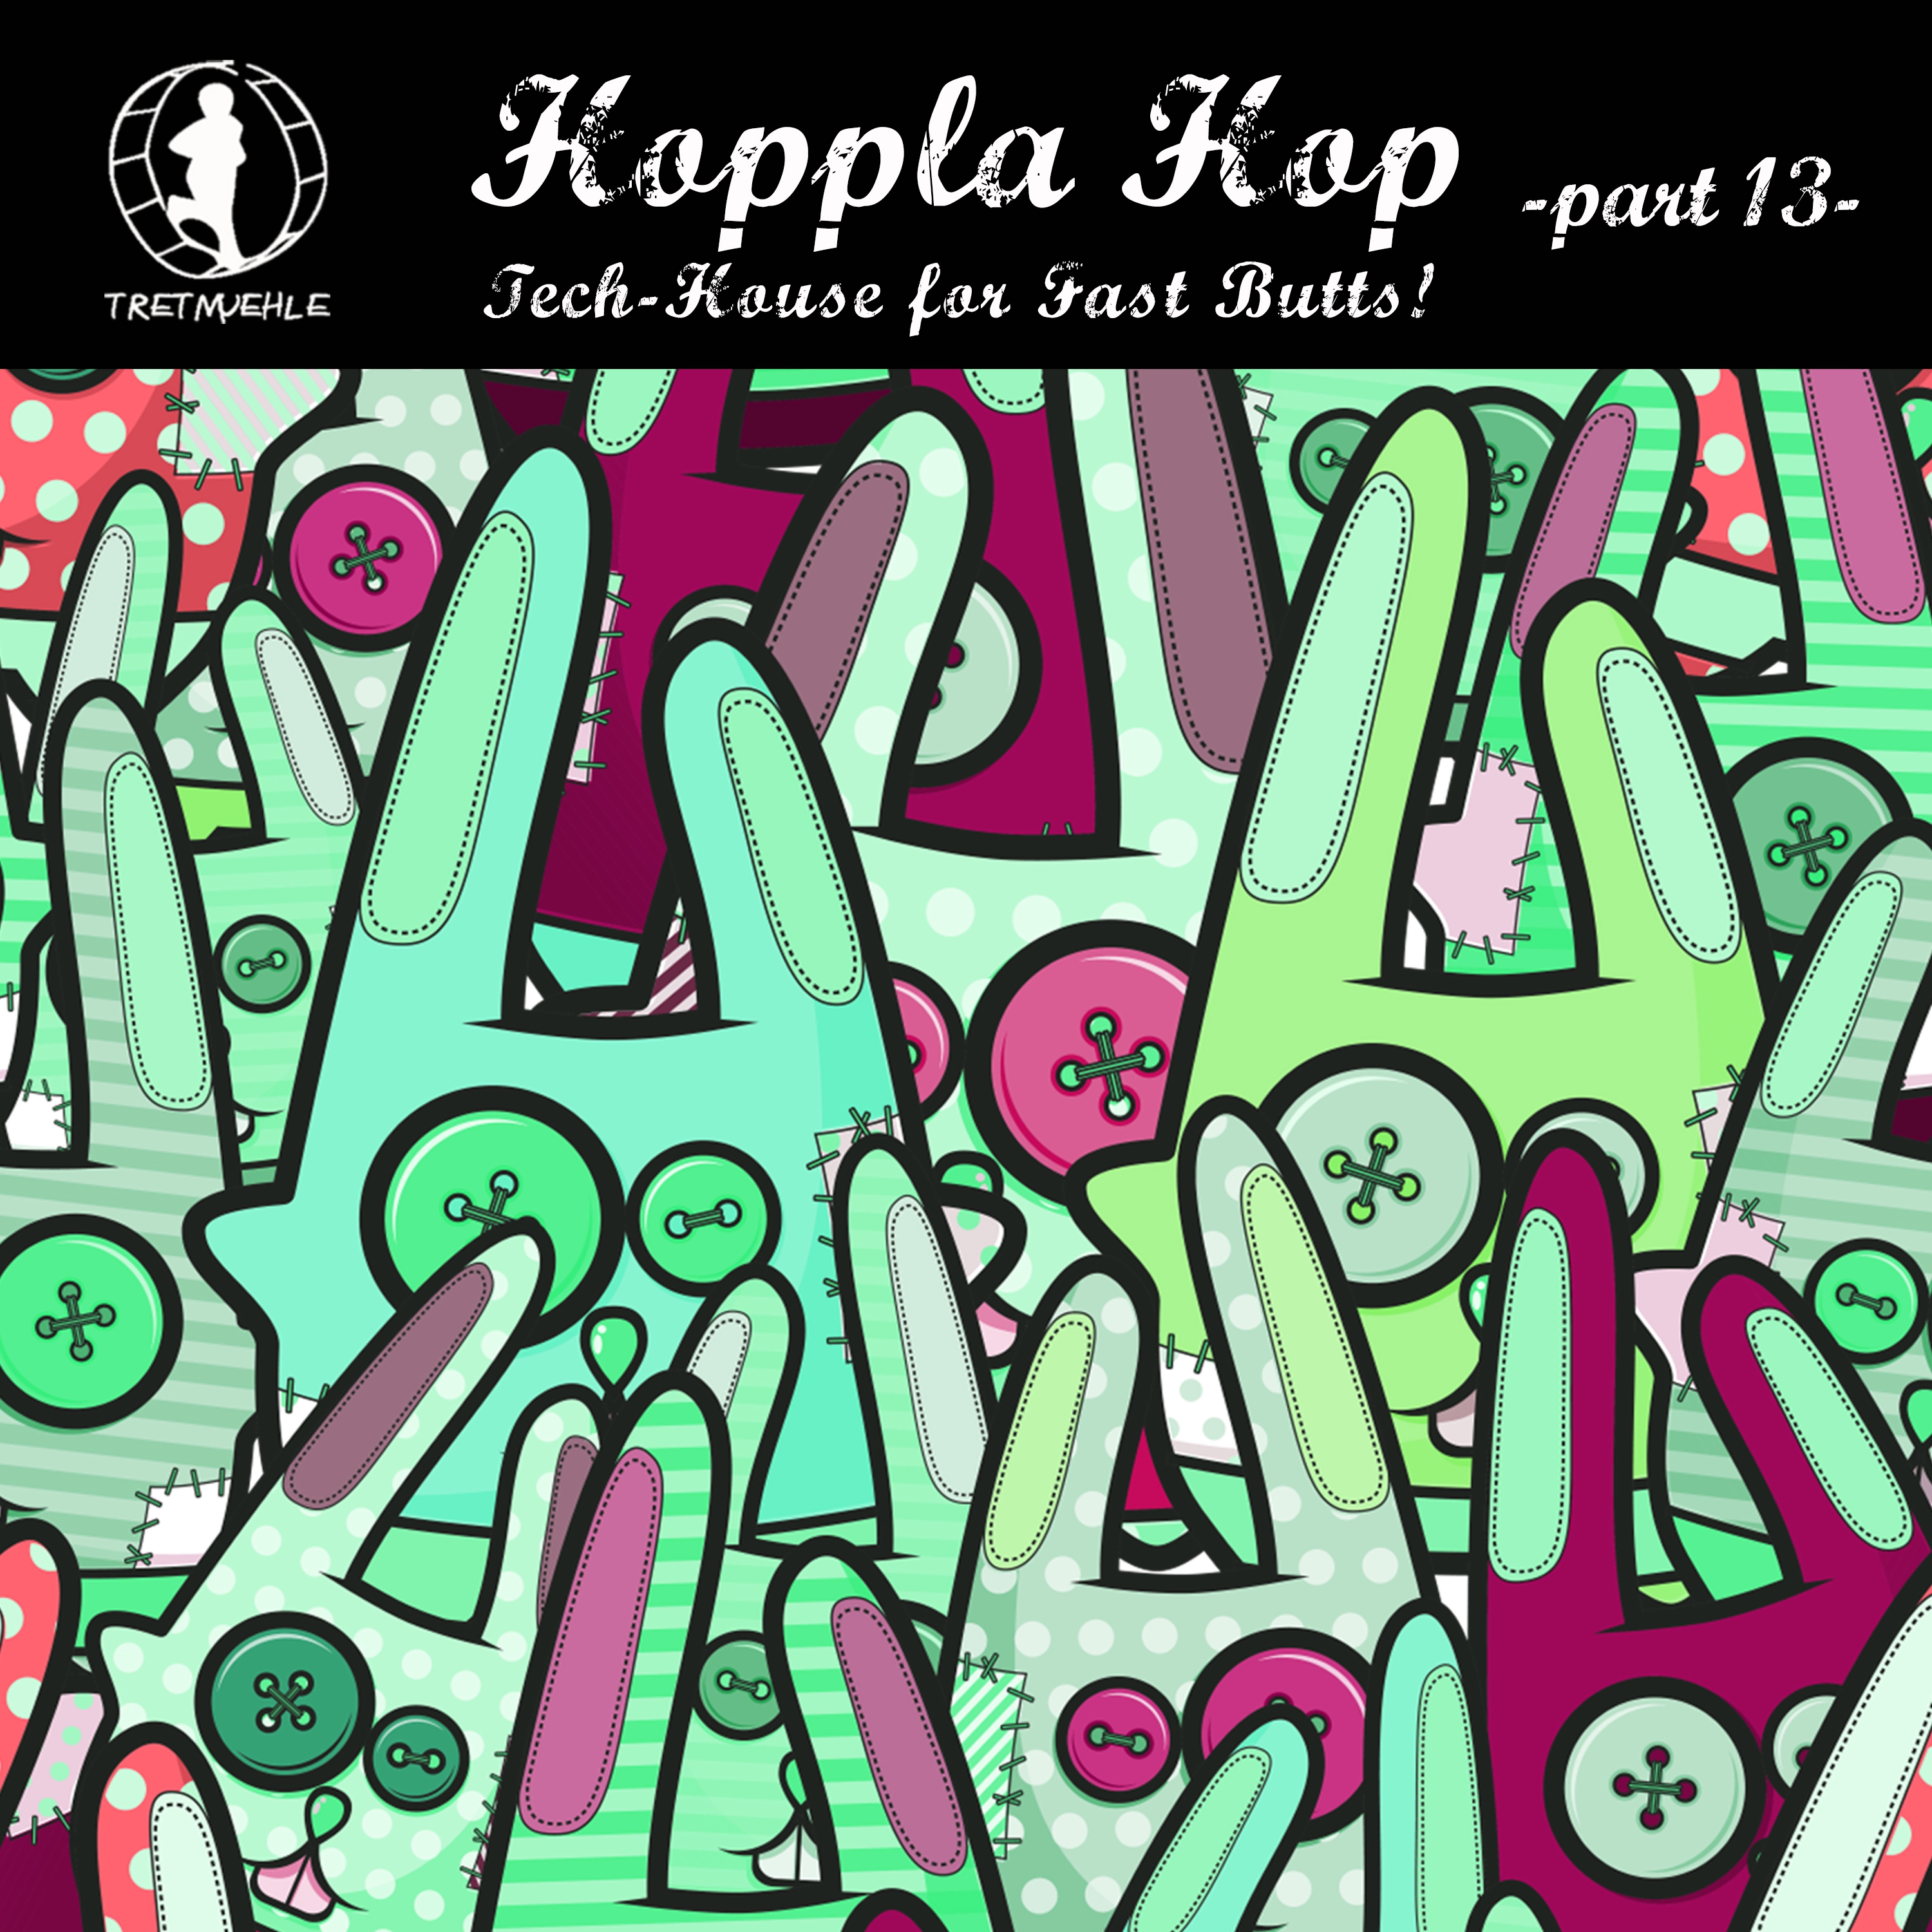 Papi (A & F Remix)